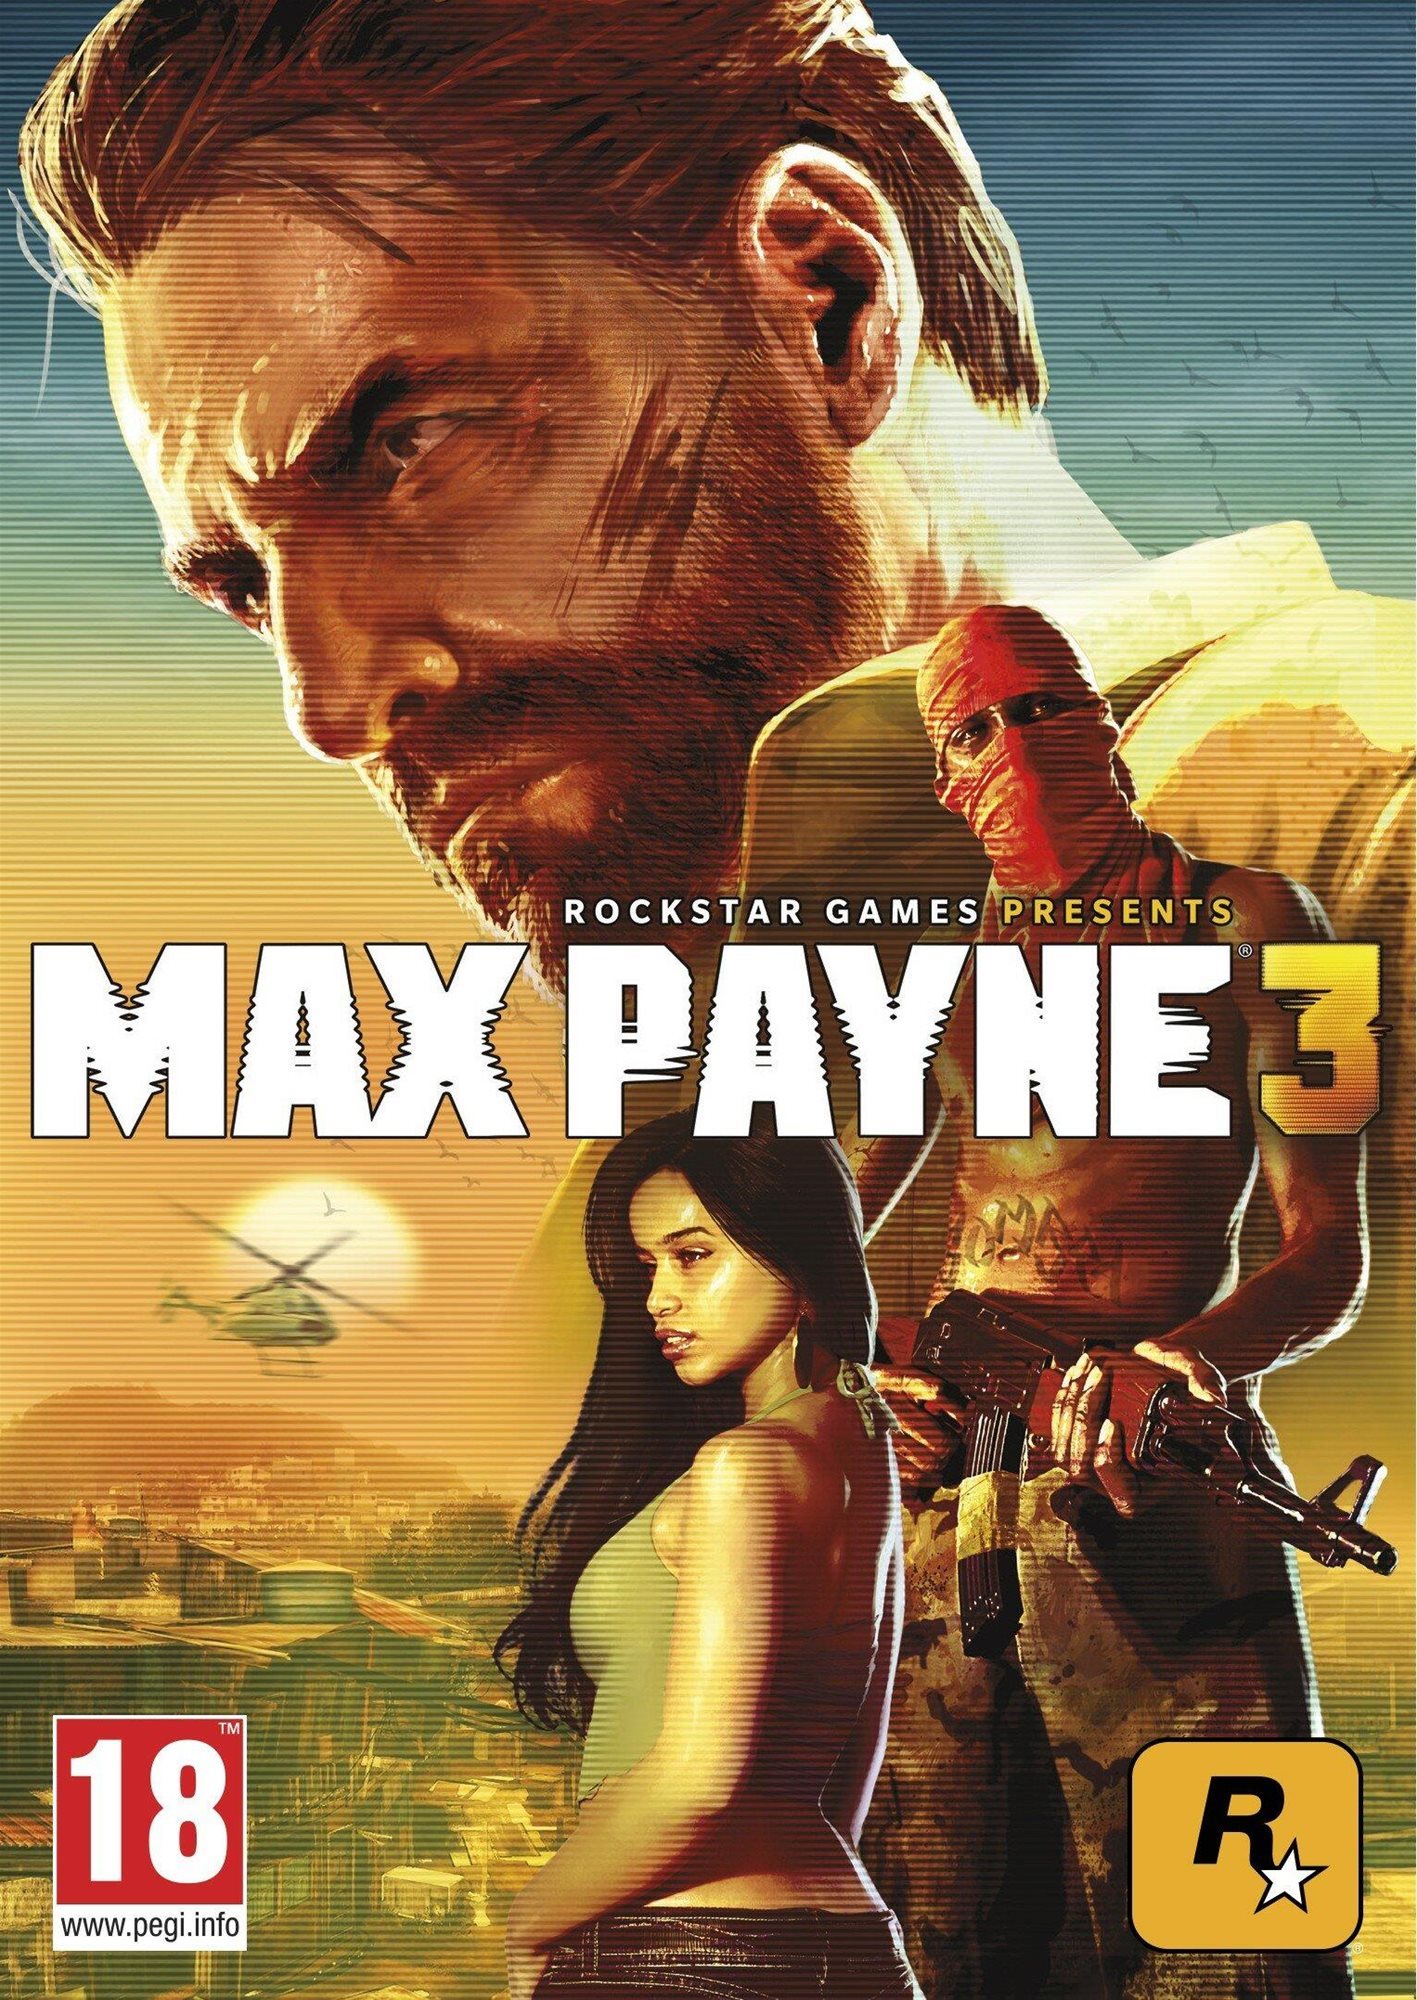 Max Payne 3 - PC DIGITAL